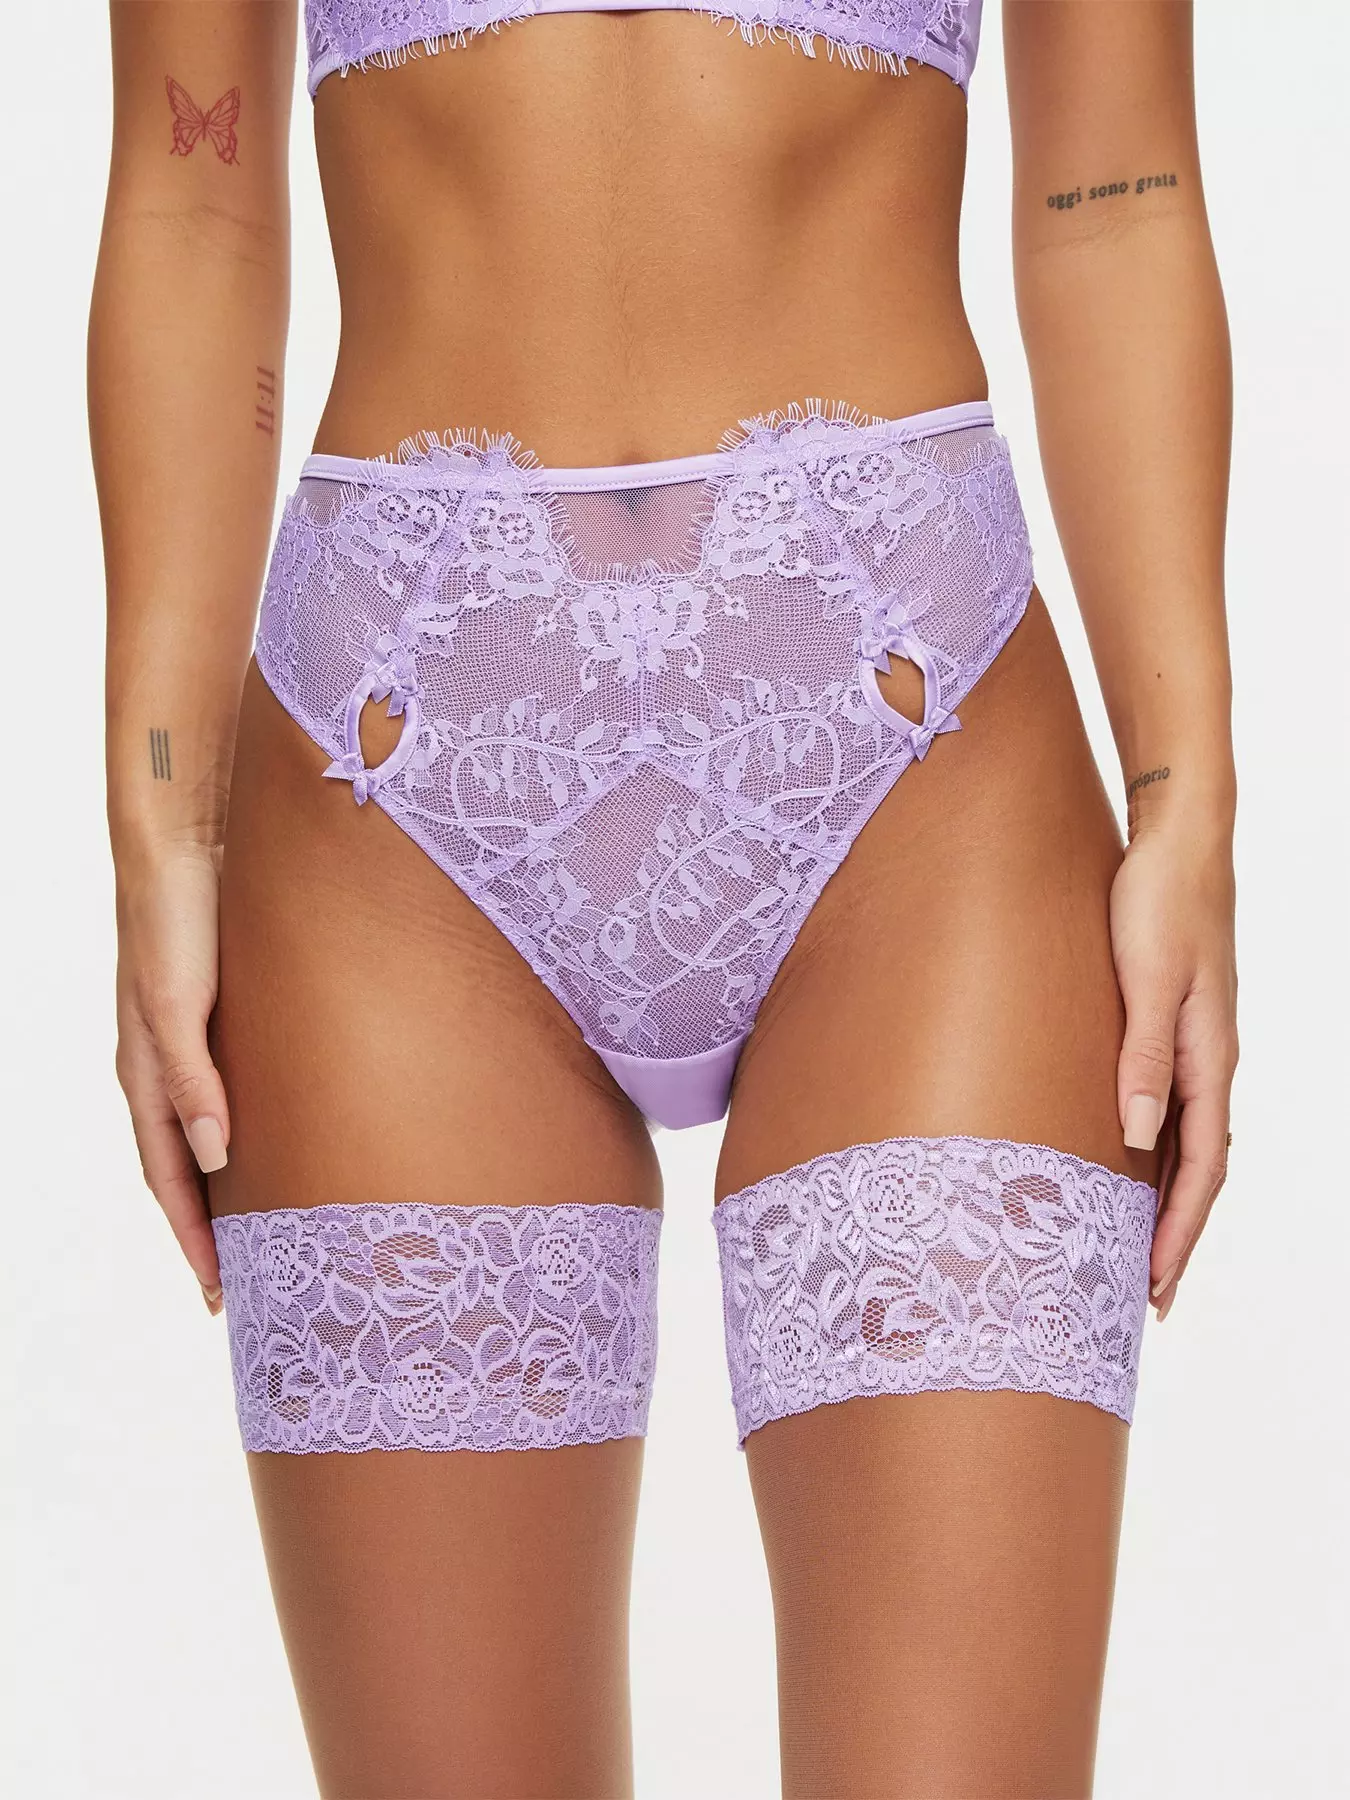 Ann Summers the graceful teddy lingerie in purple